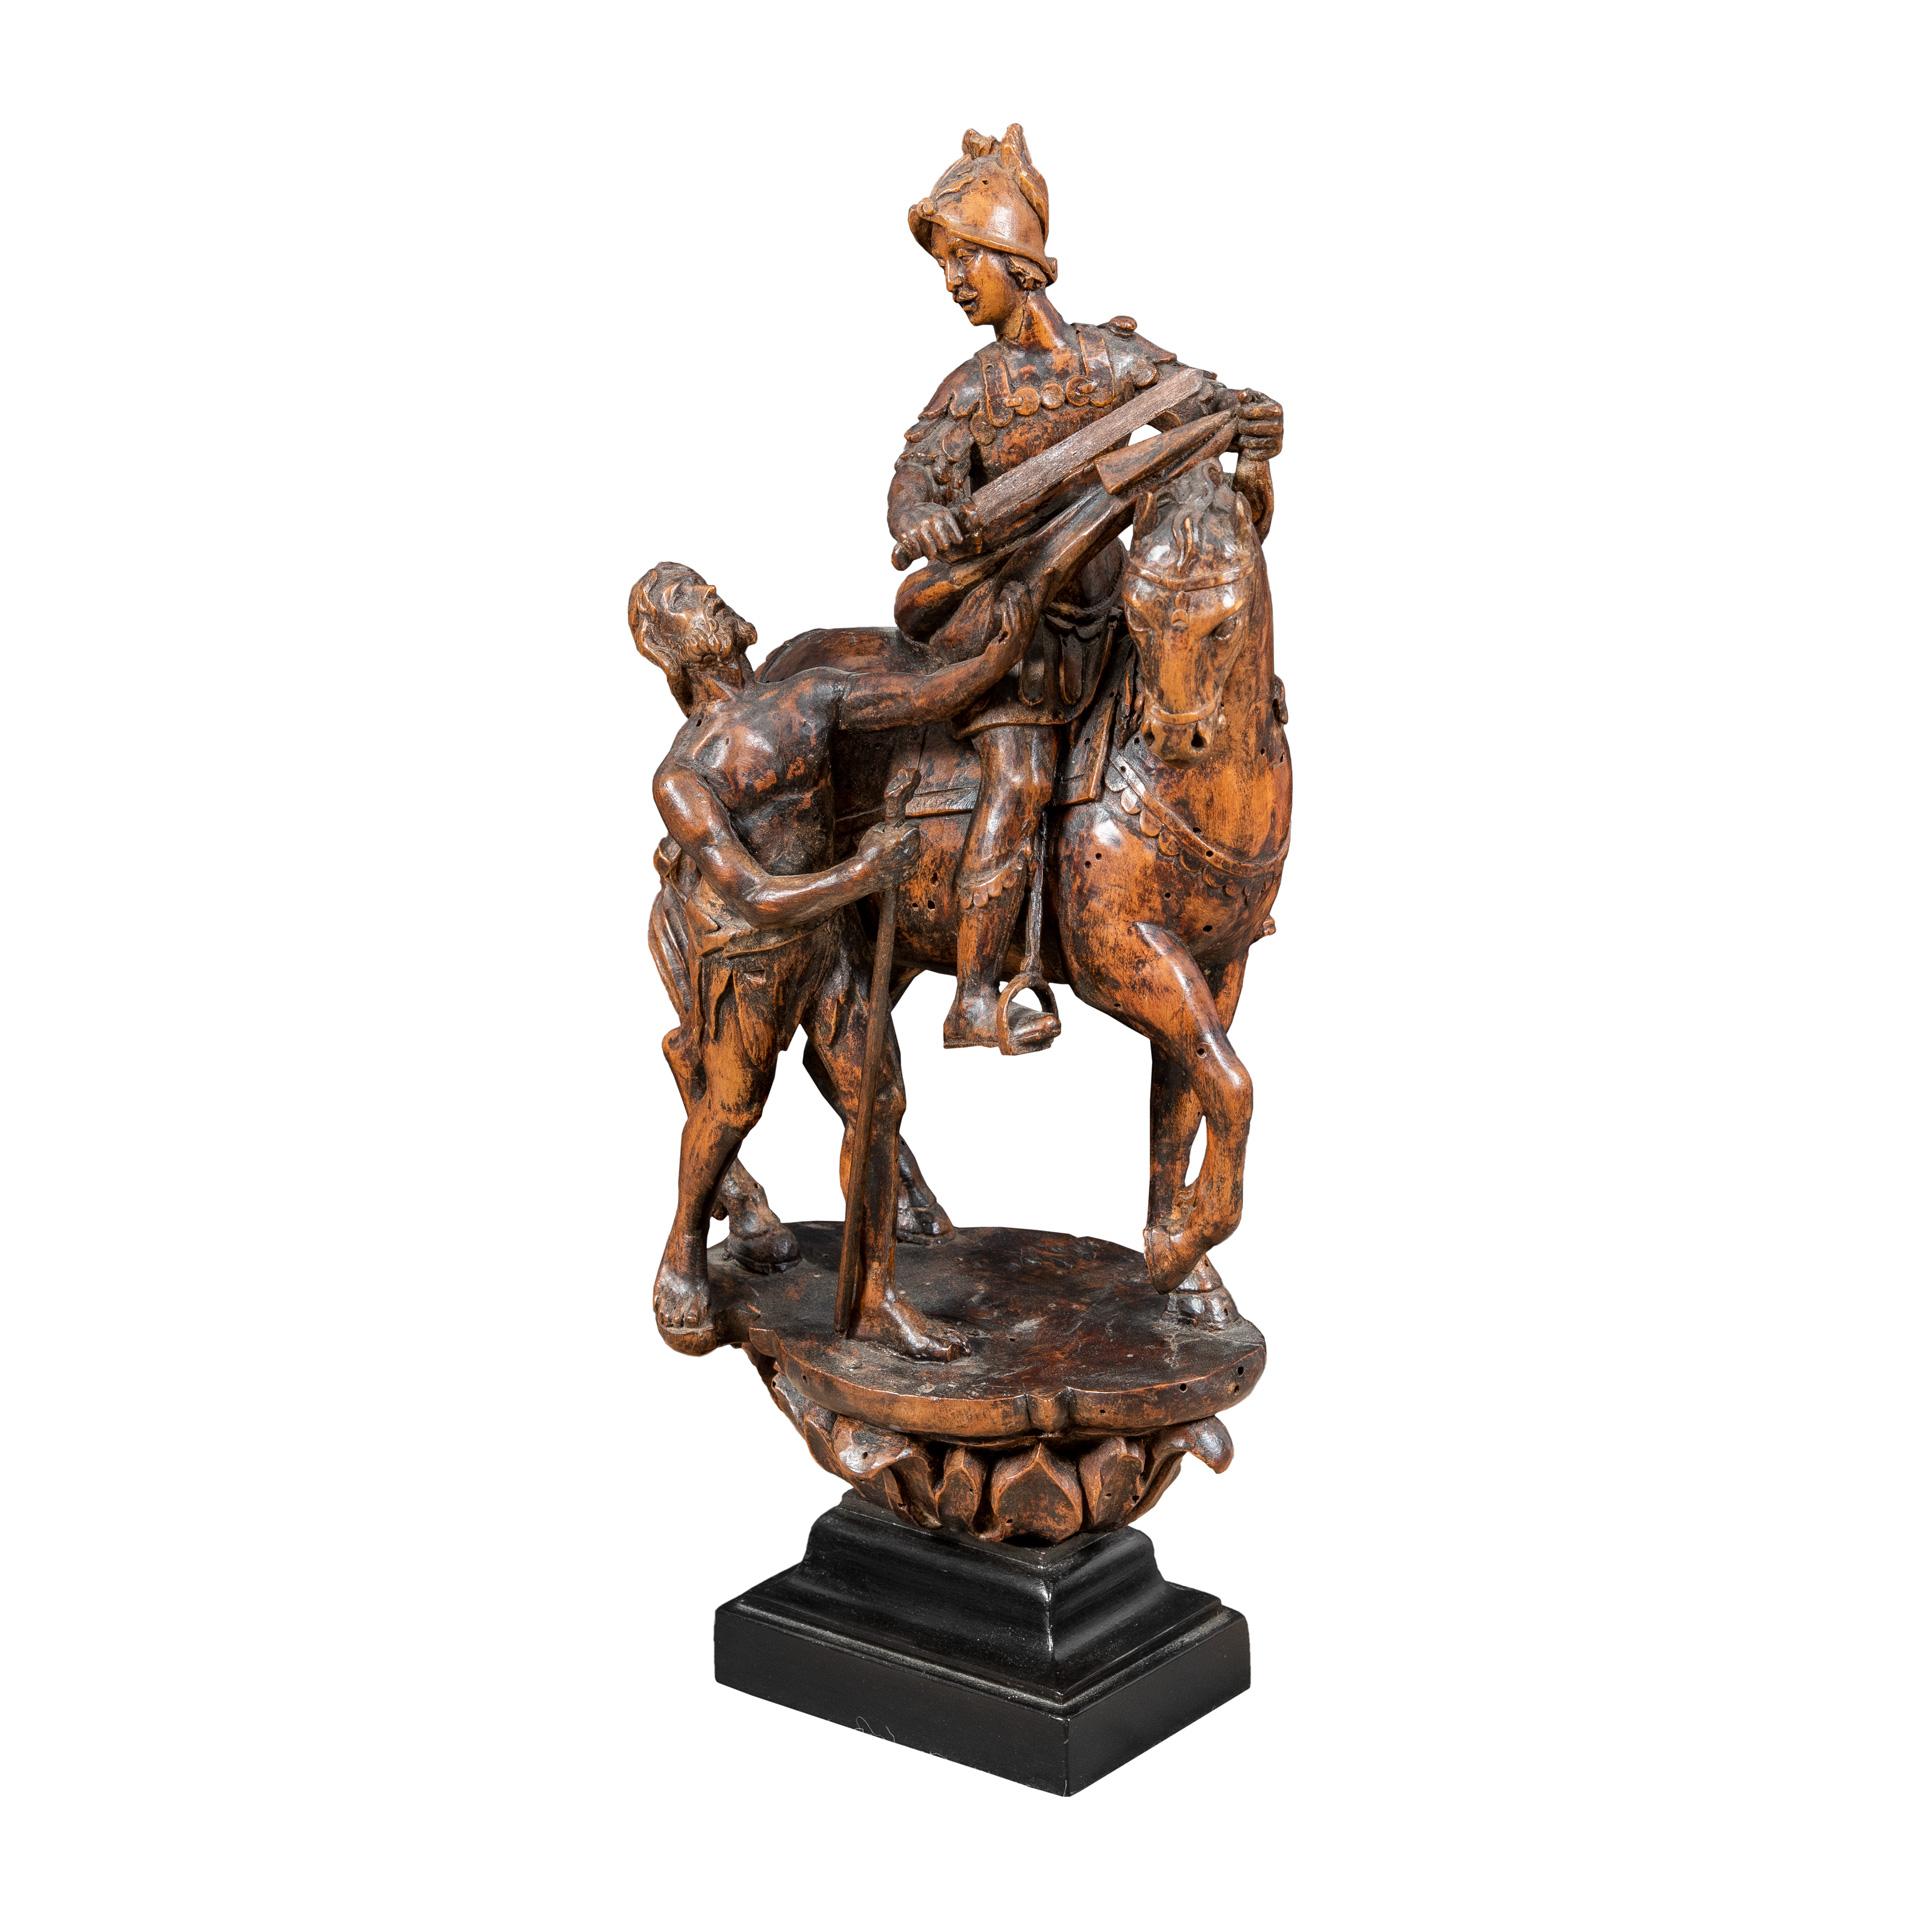 Italienische Figurenskulptur des 18. Jahrhunderts – Saint Martin – geschnitztes Holz, Italien – Sculpture von Unknown